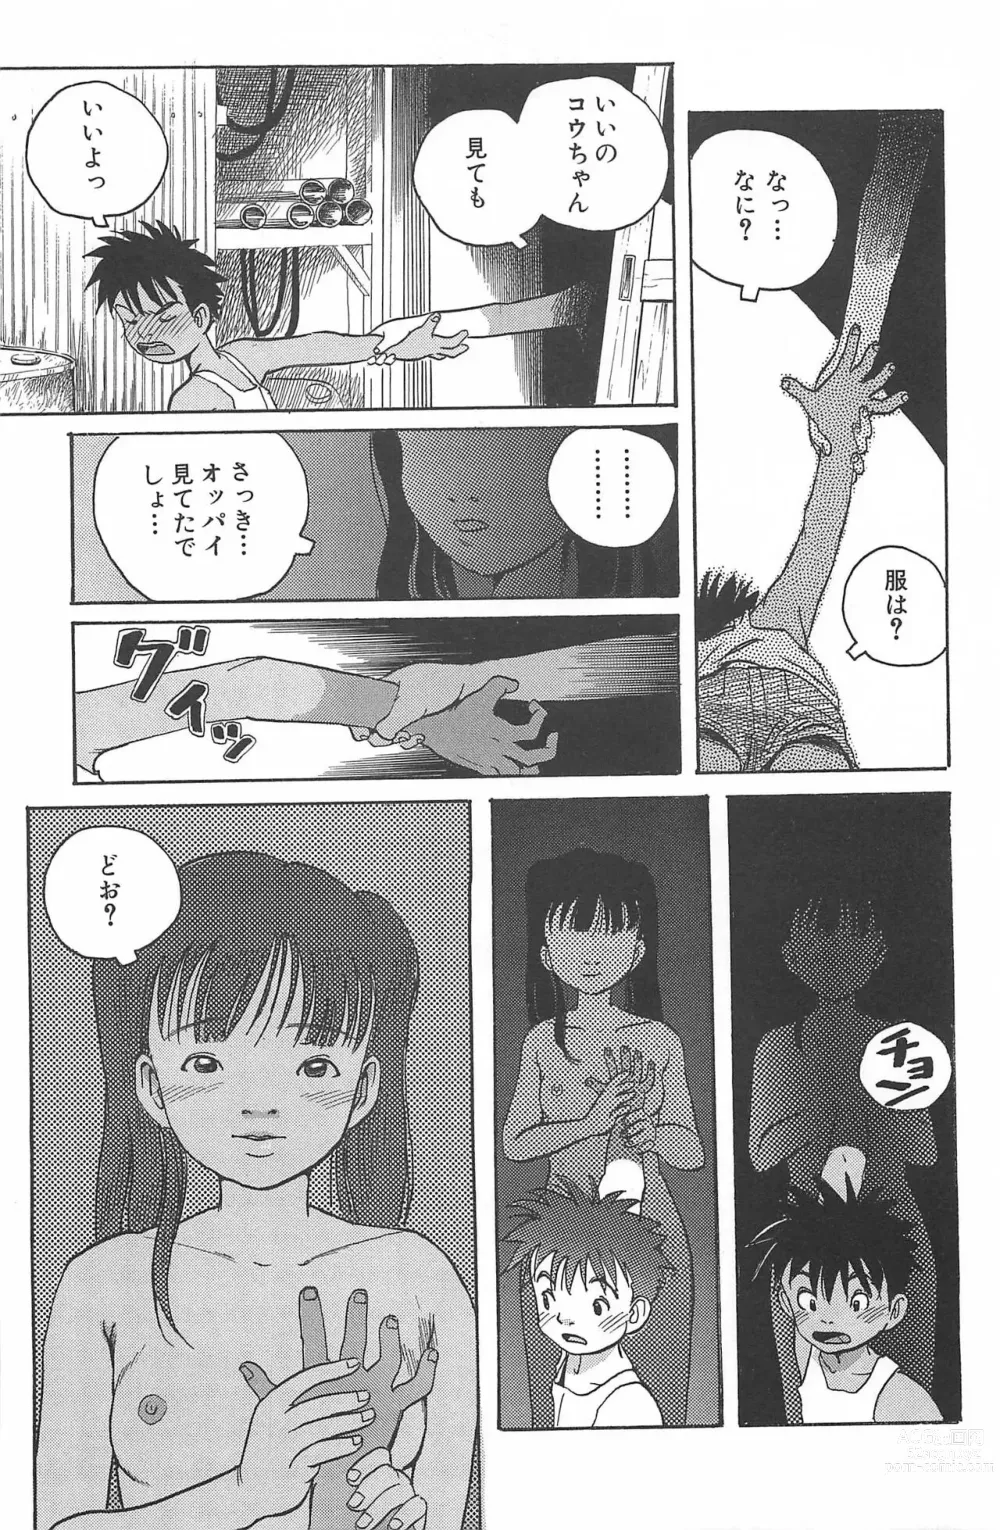 Page 3 of manga Dokidoki